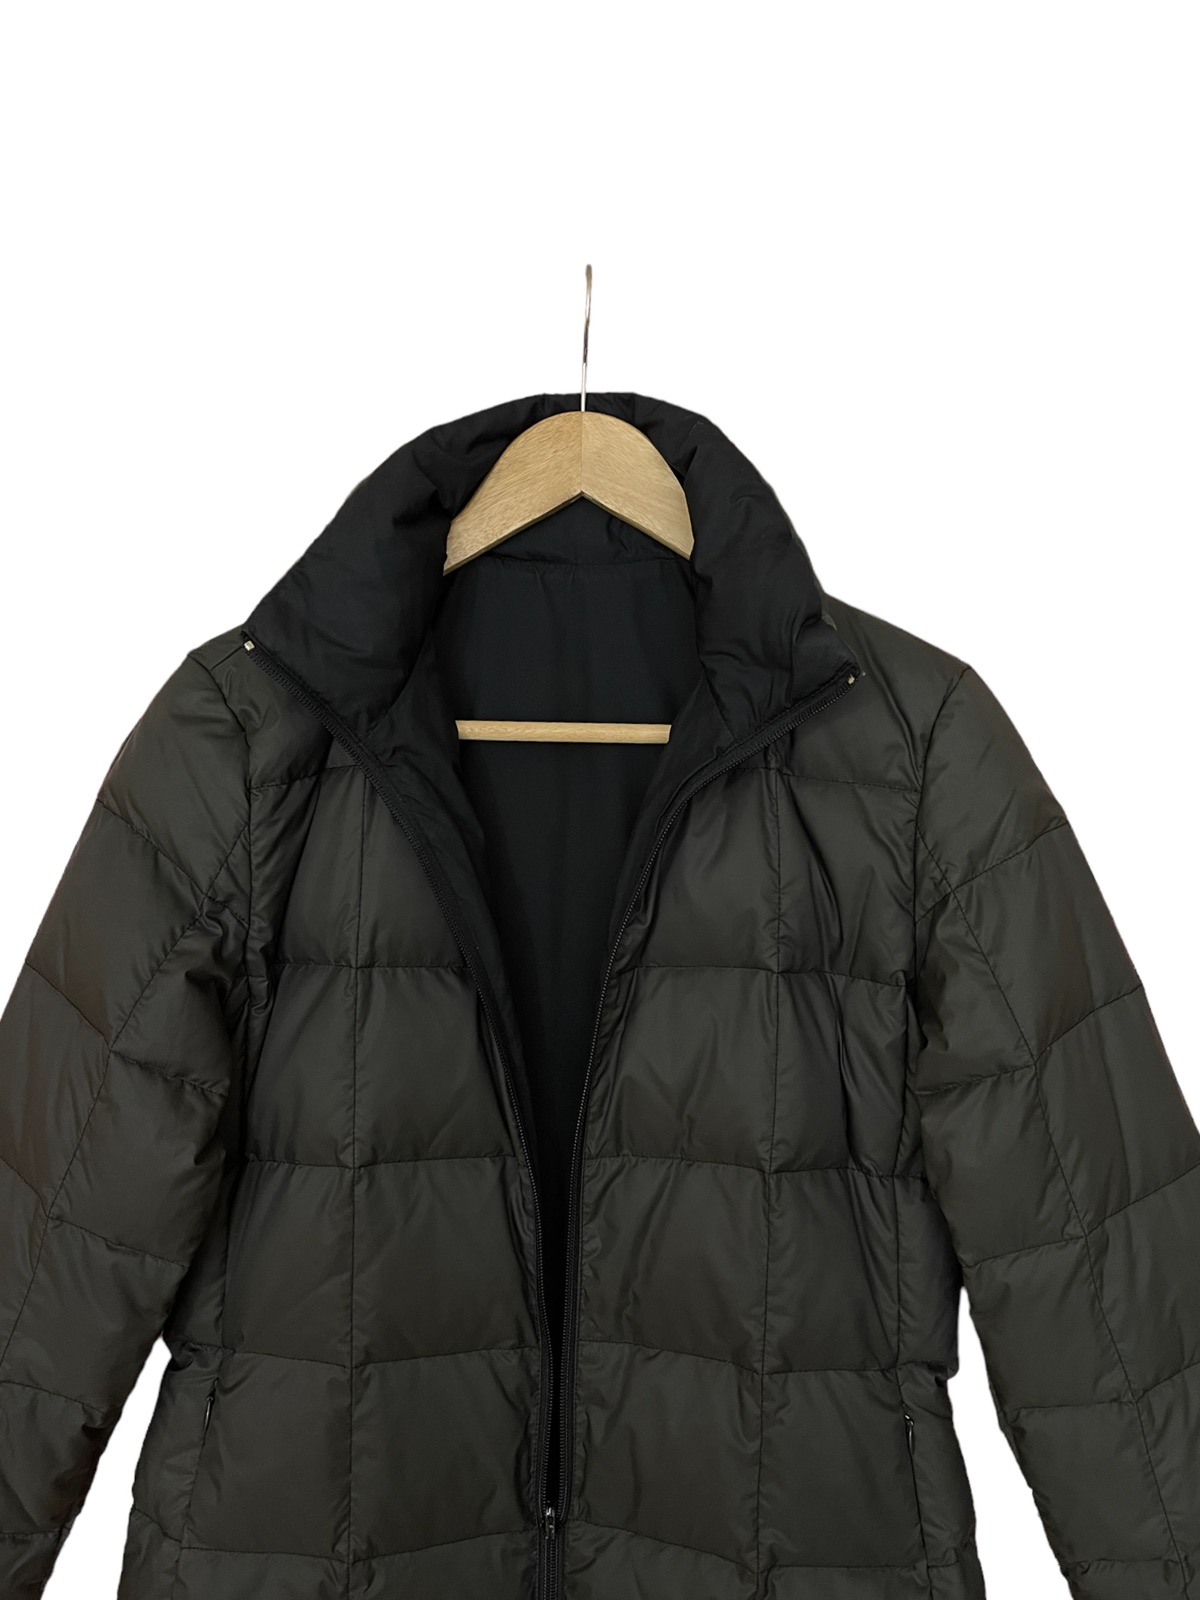 Moncler long puffer jacket reversible down jacket - 13